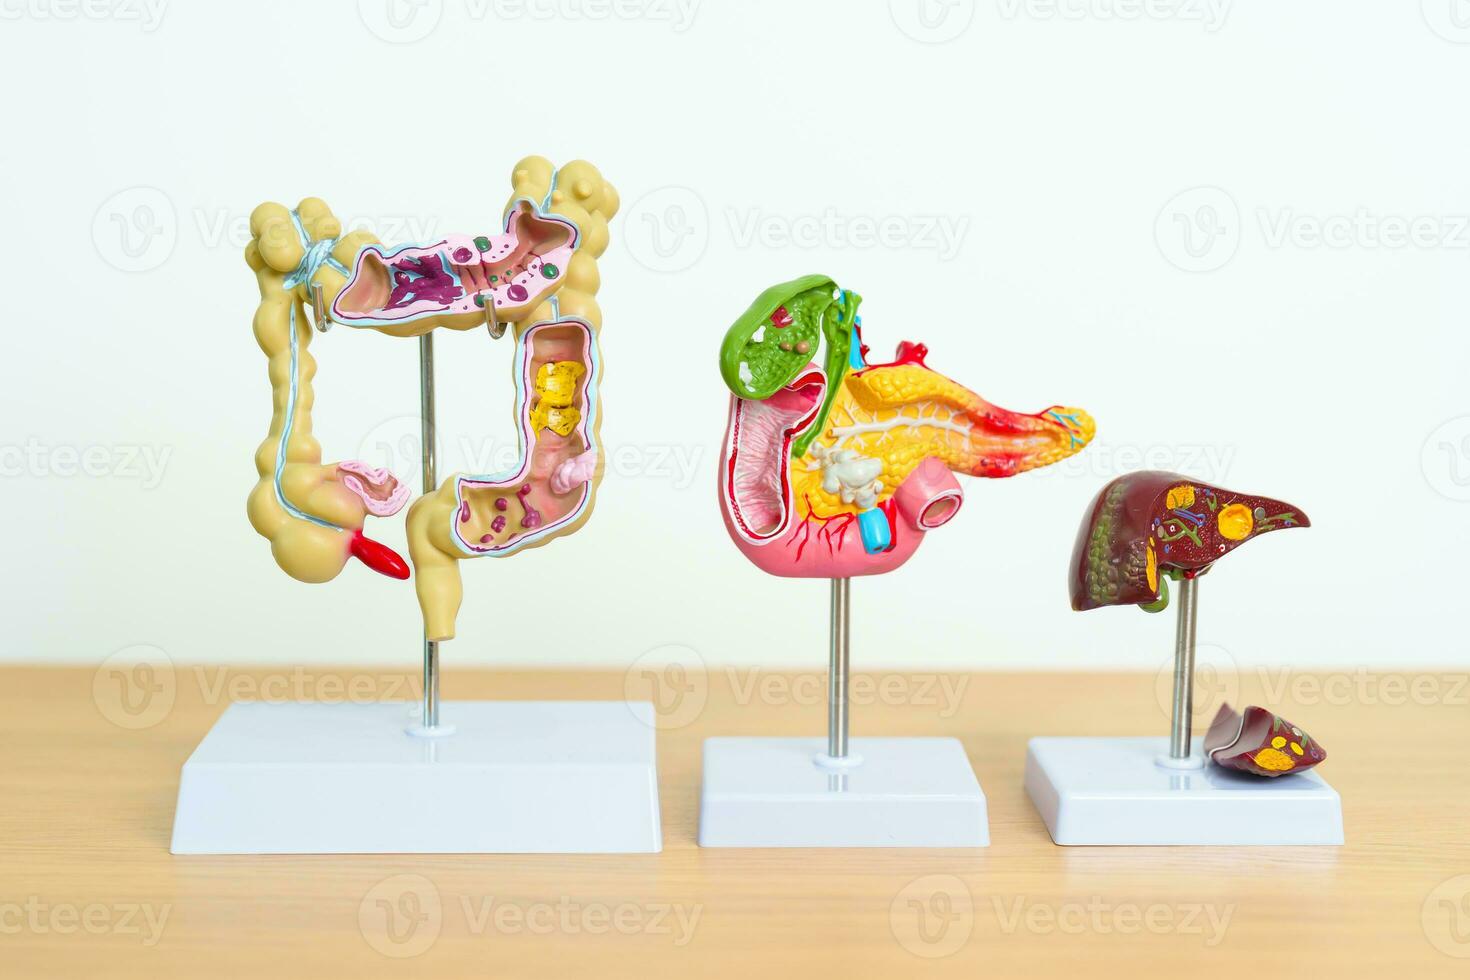 humano digestivo sistema anatomía modelo, páncreas, vesícula biliar, bilis conducto, hígado y colon grande intestino. enfermedad, cuidado de la salud y salud concepto foto